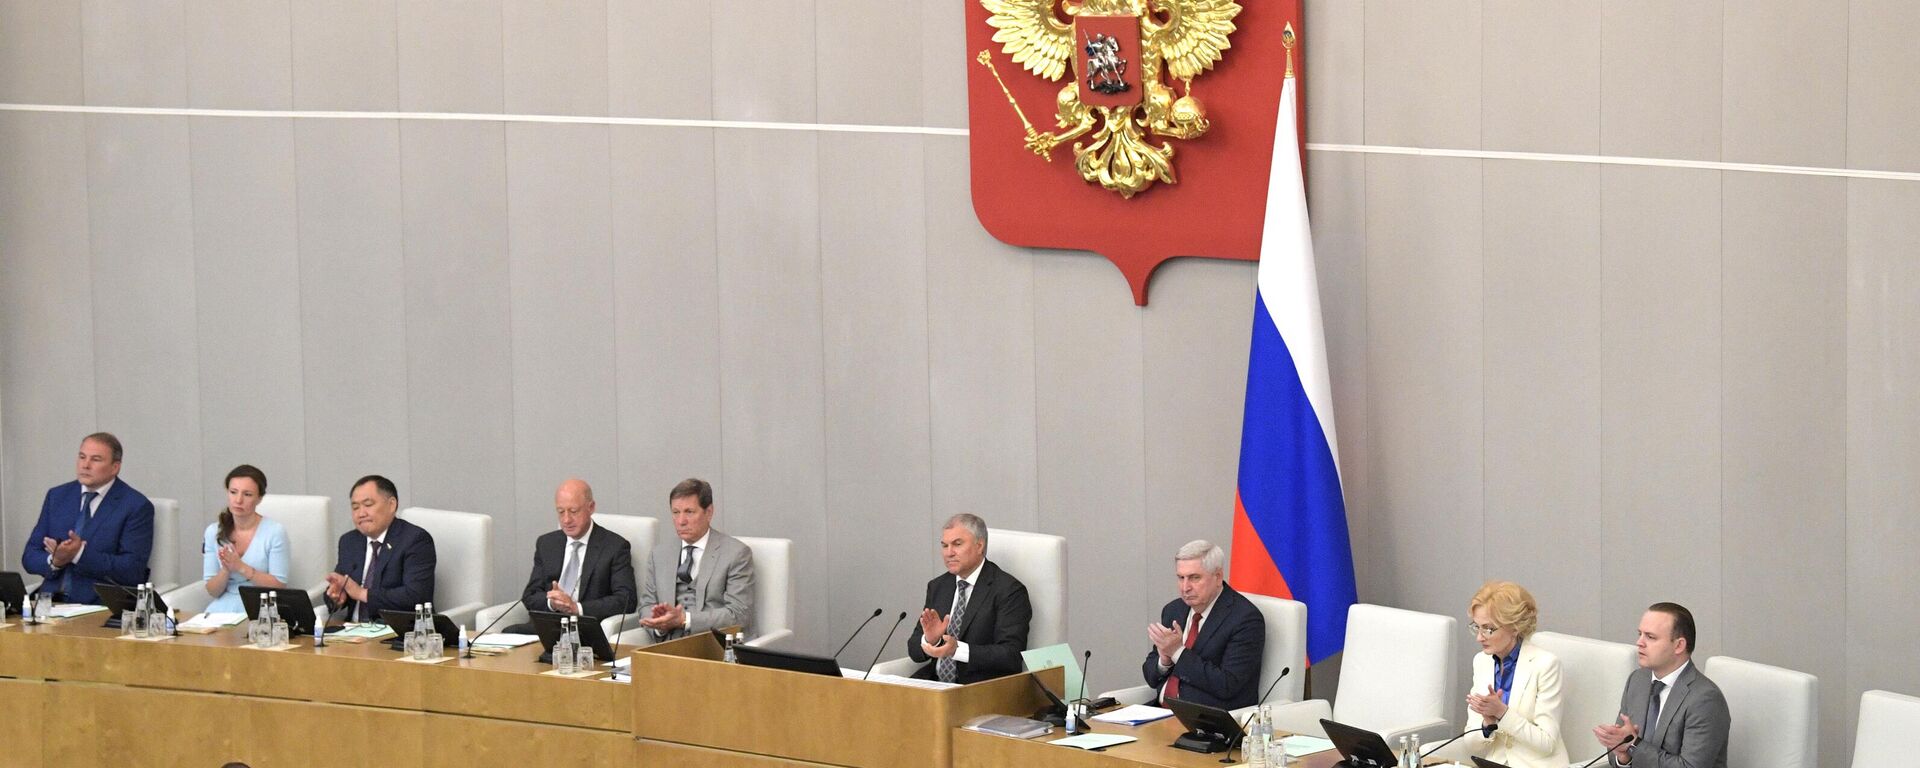 Vyacheslav Volodin, presidente da Duma, câmara baixa do Parlamento russo, fala em sessão plenária do órgão, foto publicada em 28 de junho de 2022 - Sputnik Brasil, 1920, 22.01.2023